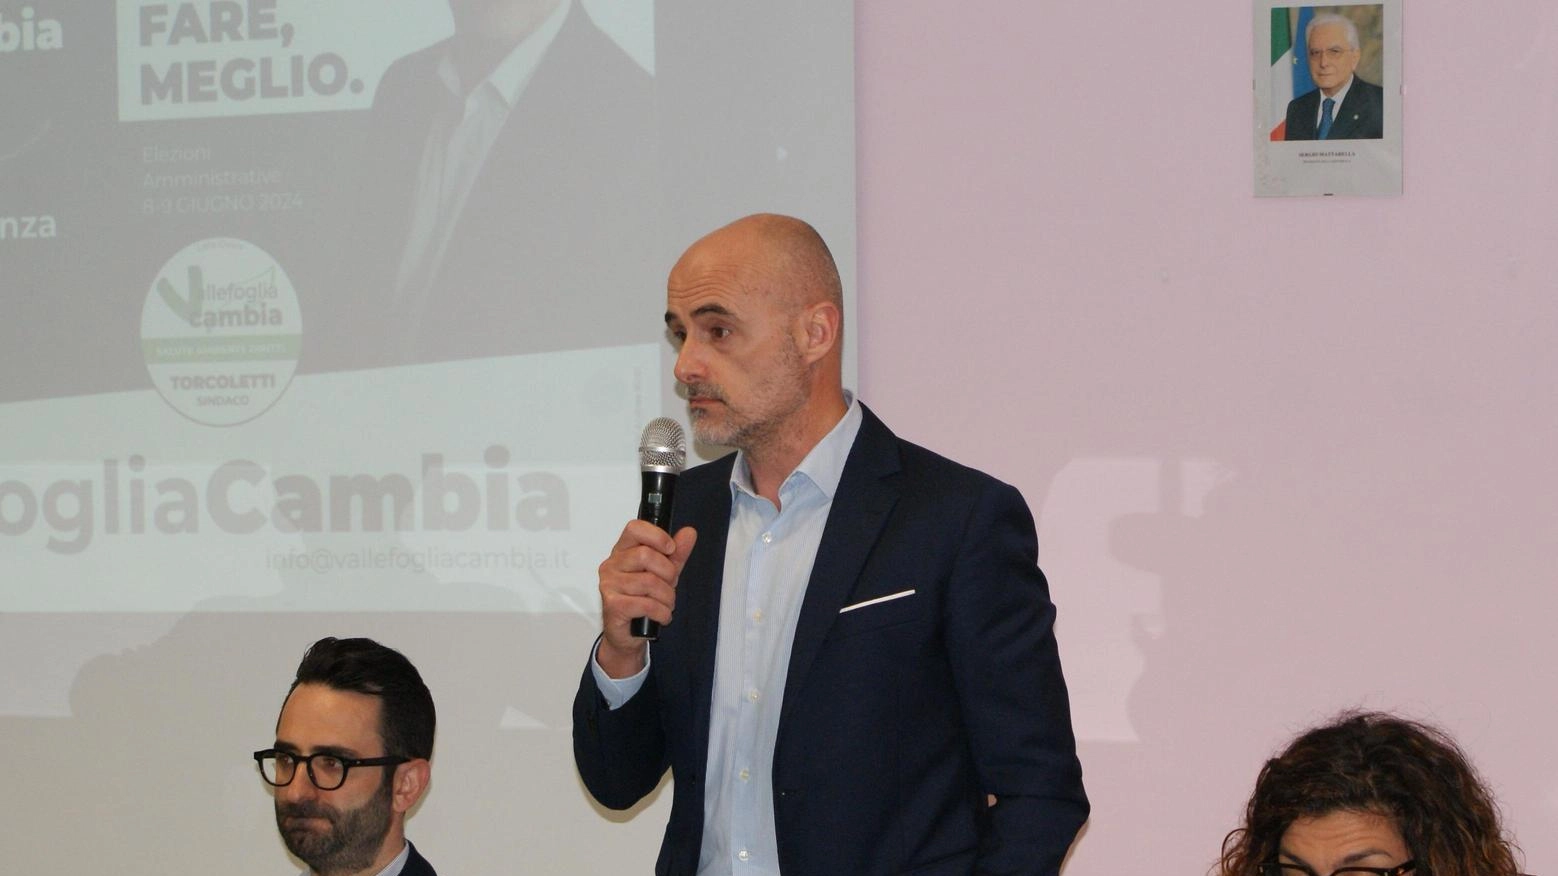 Torcoletti sfida Ucchielli: "Ambiente e trasparenza"